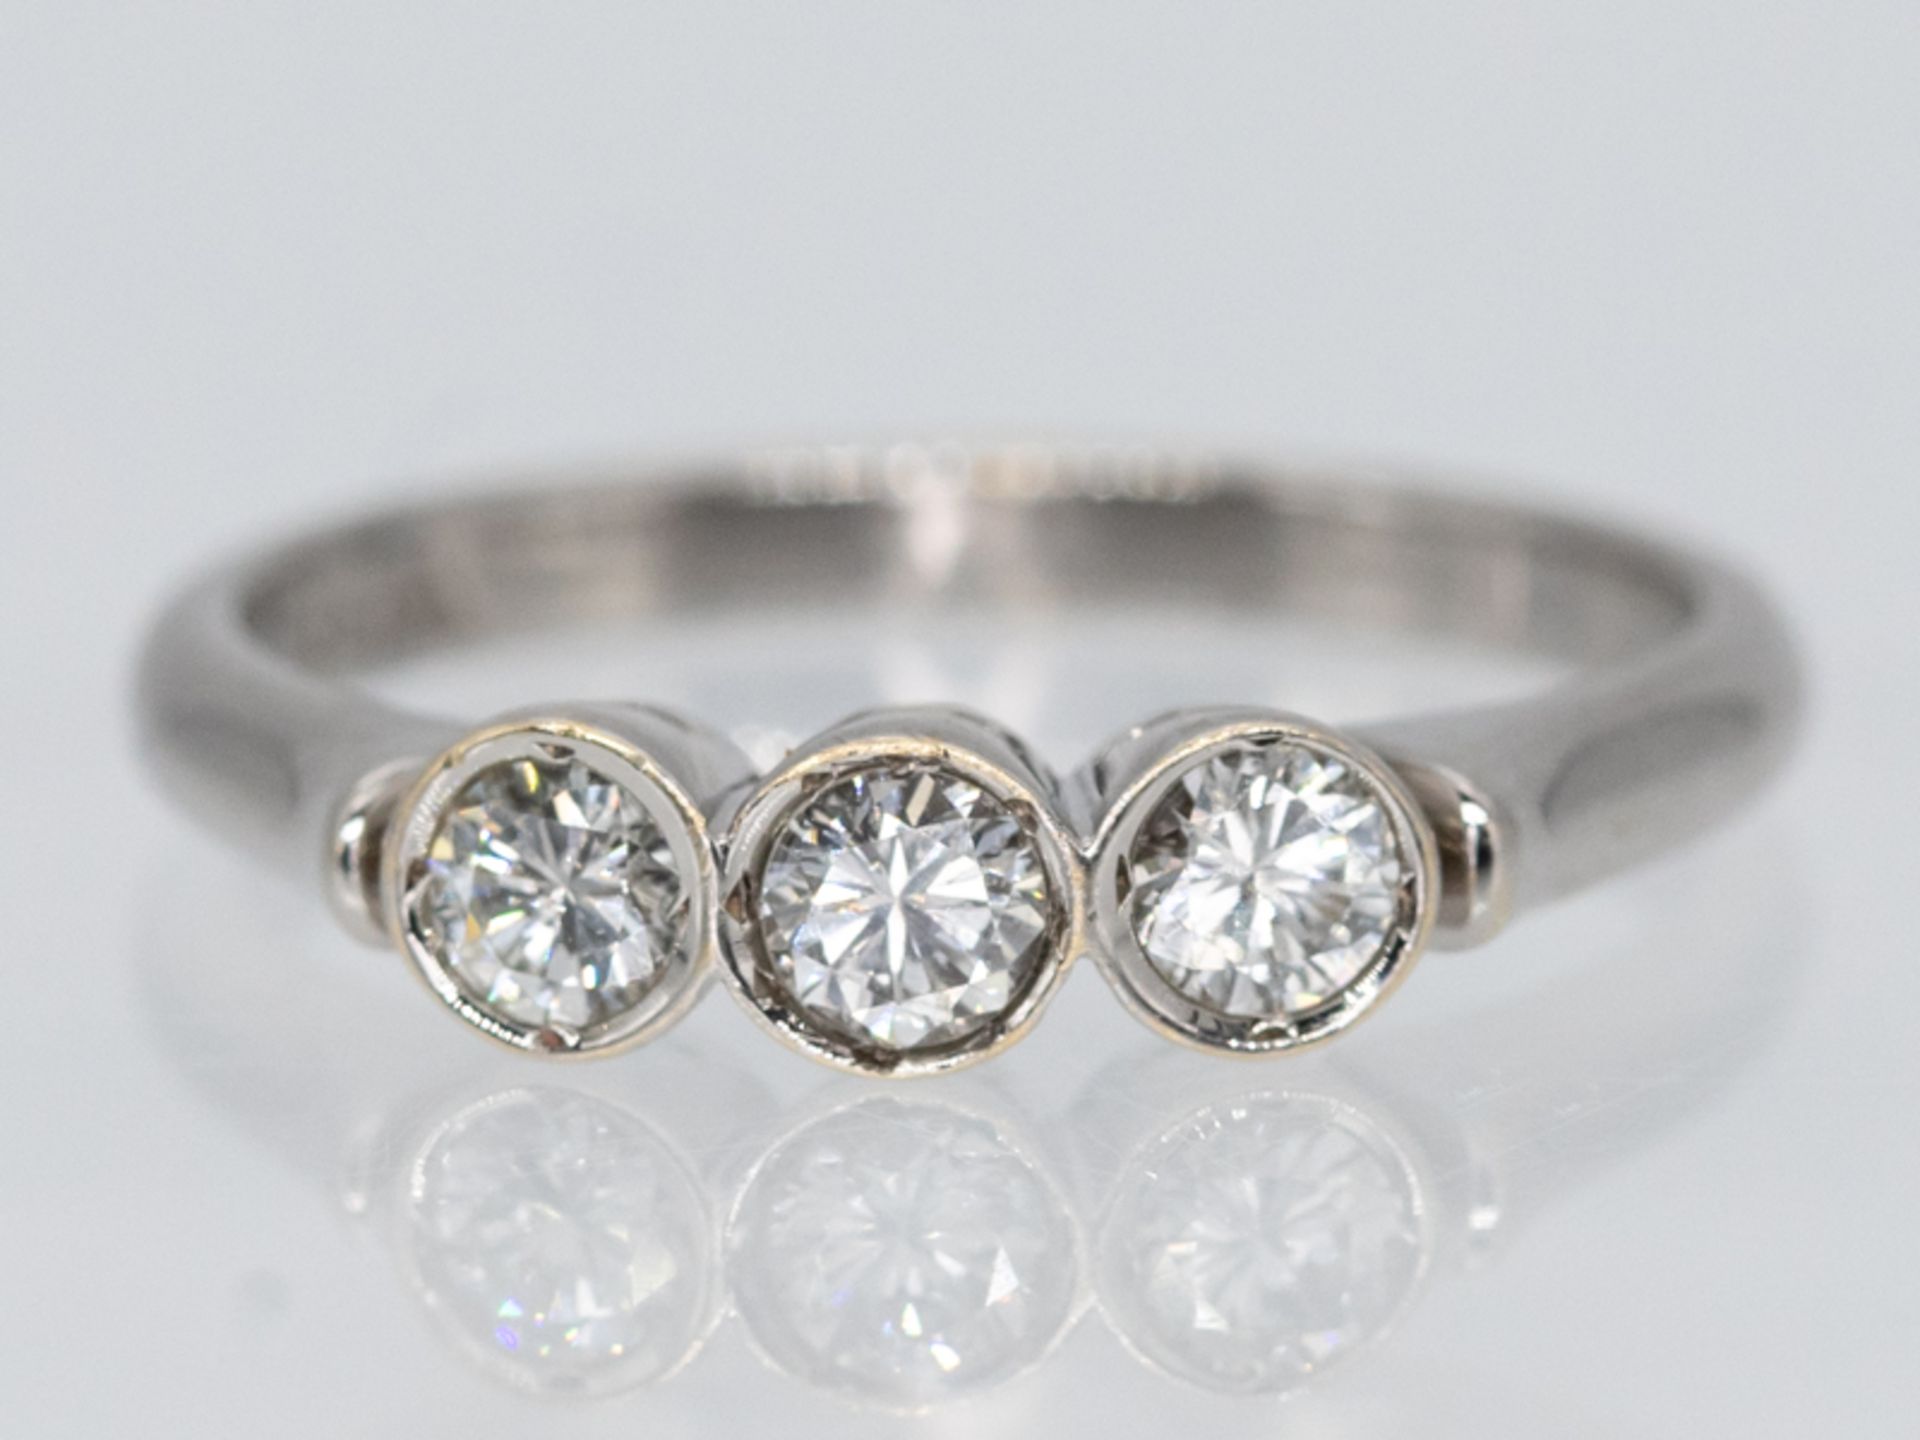 Ring mit 3 Brillanten, zusammen ca. 0,60 ct, Juwelier Wilm, Hamburg, 90- er Jahre.